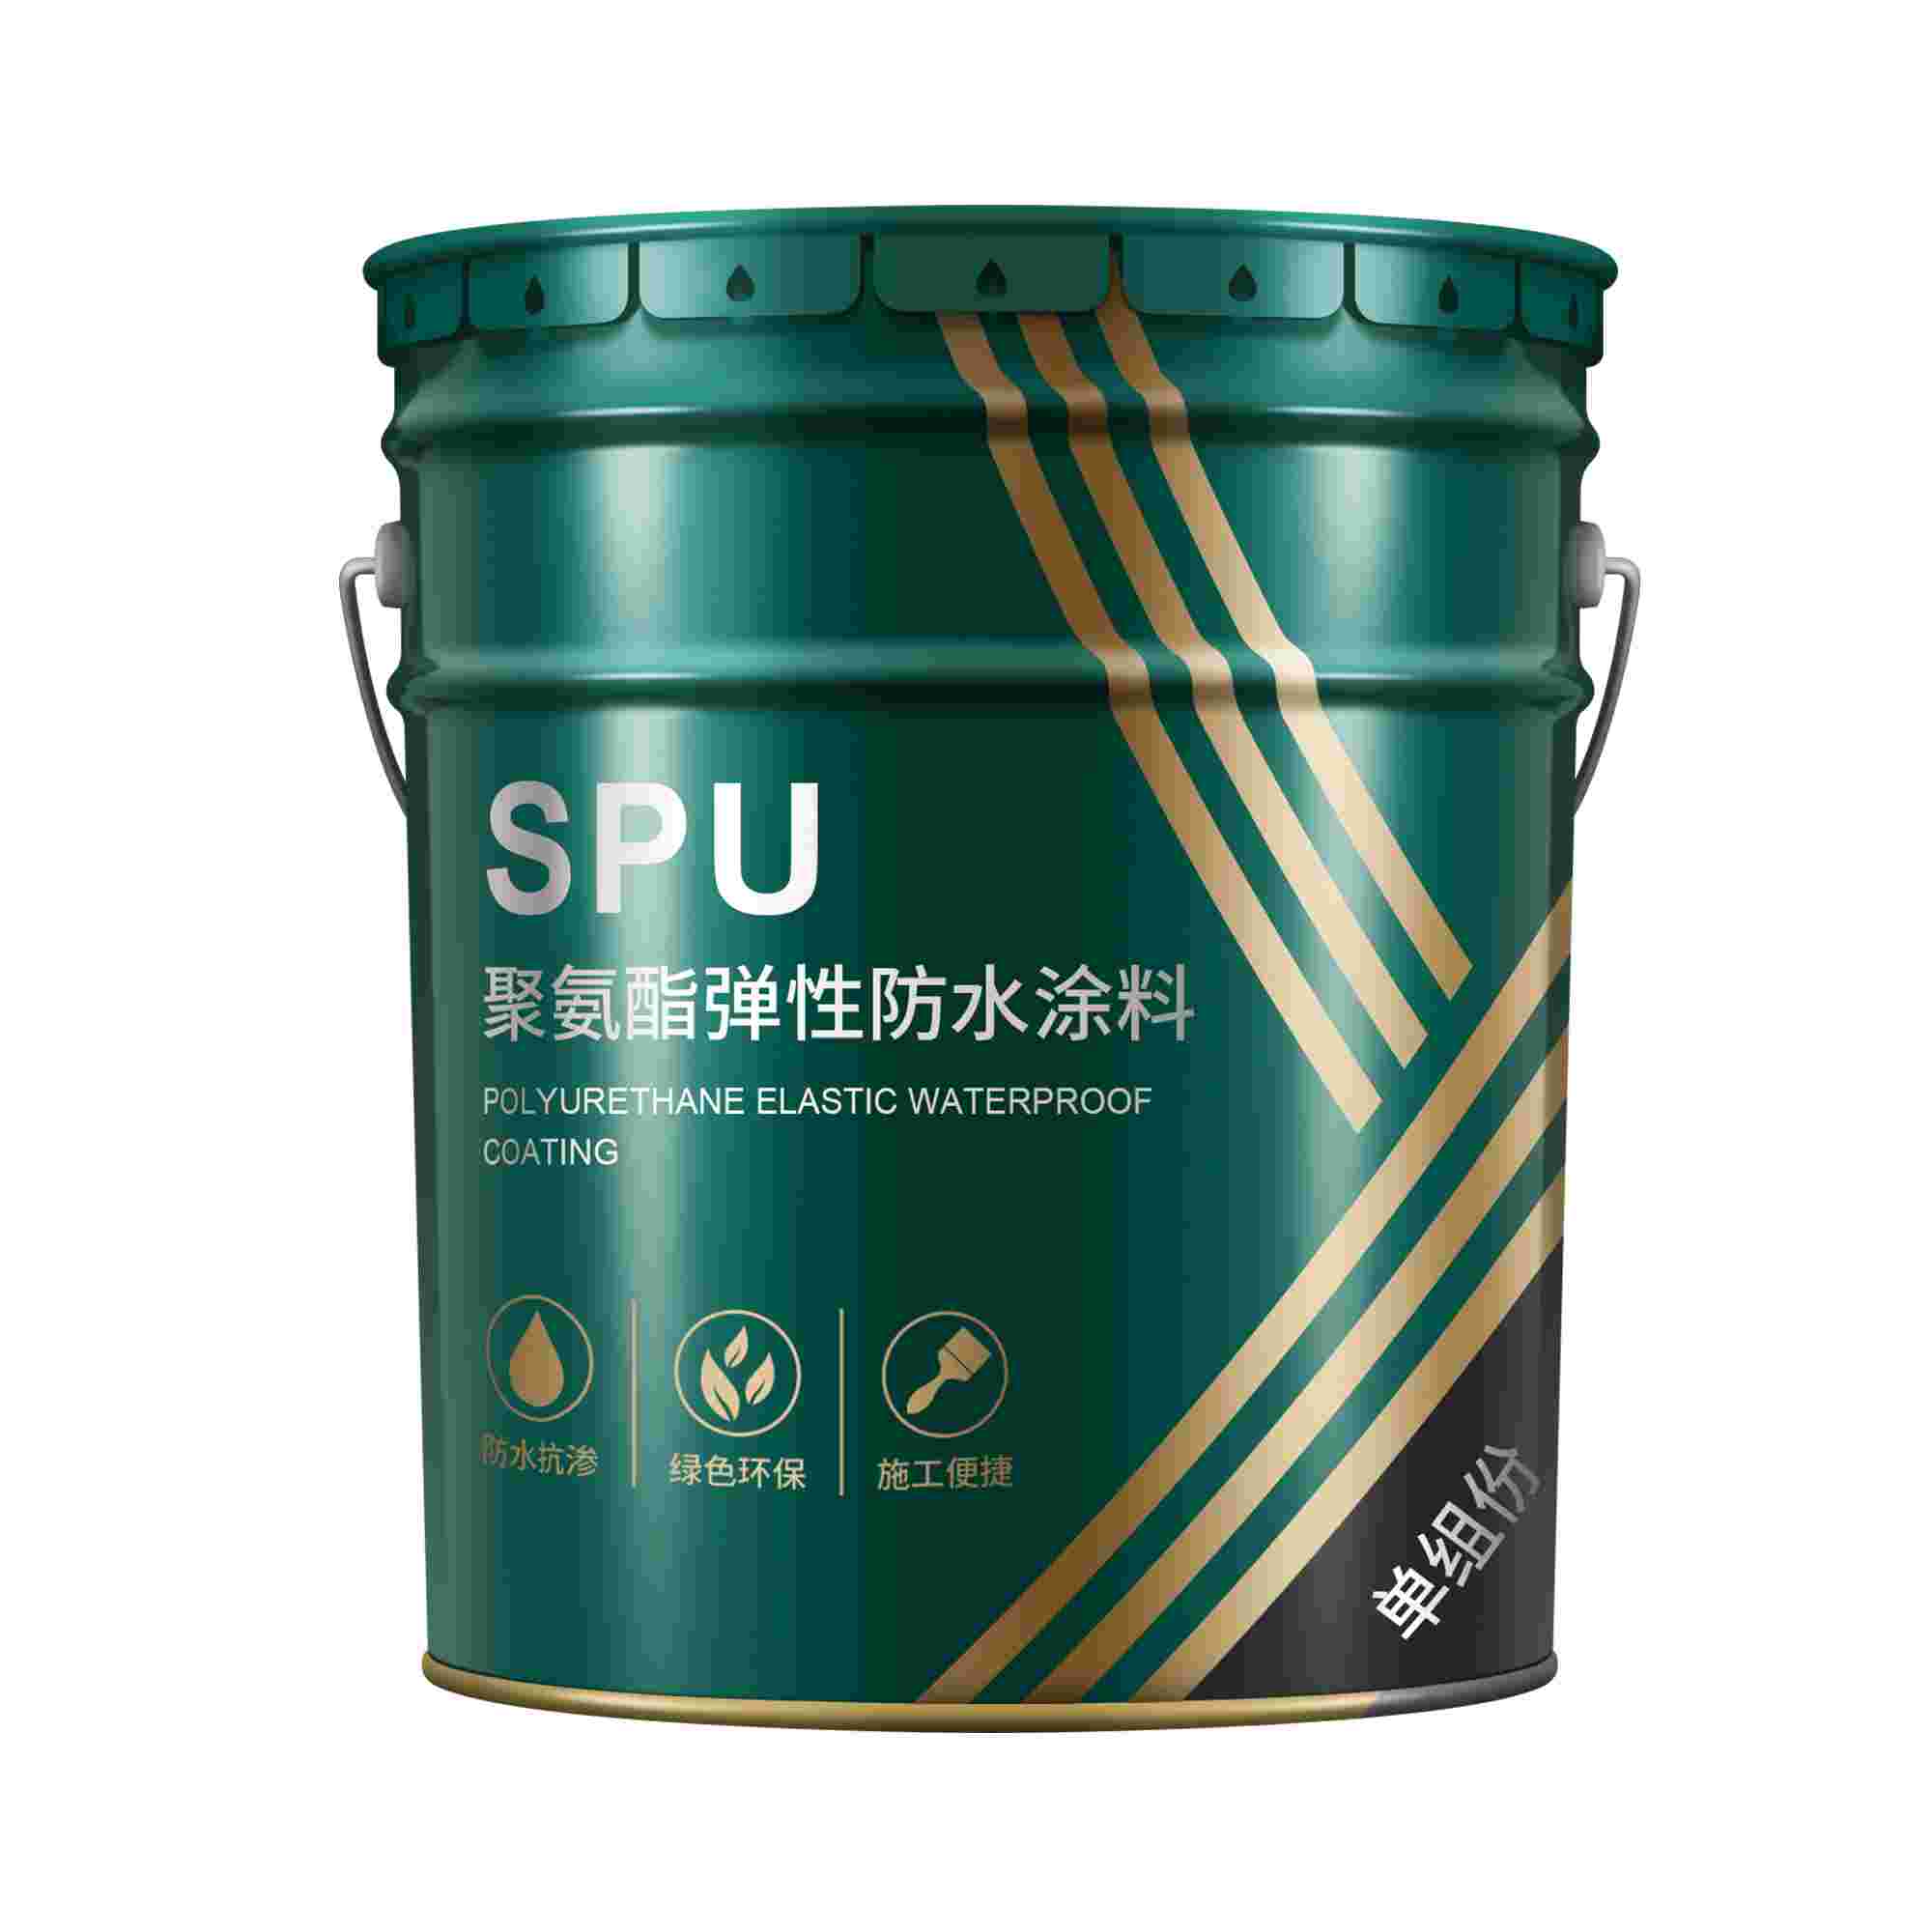 SPU单组份聚氨酯弹性防水涂料